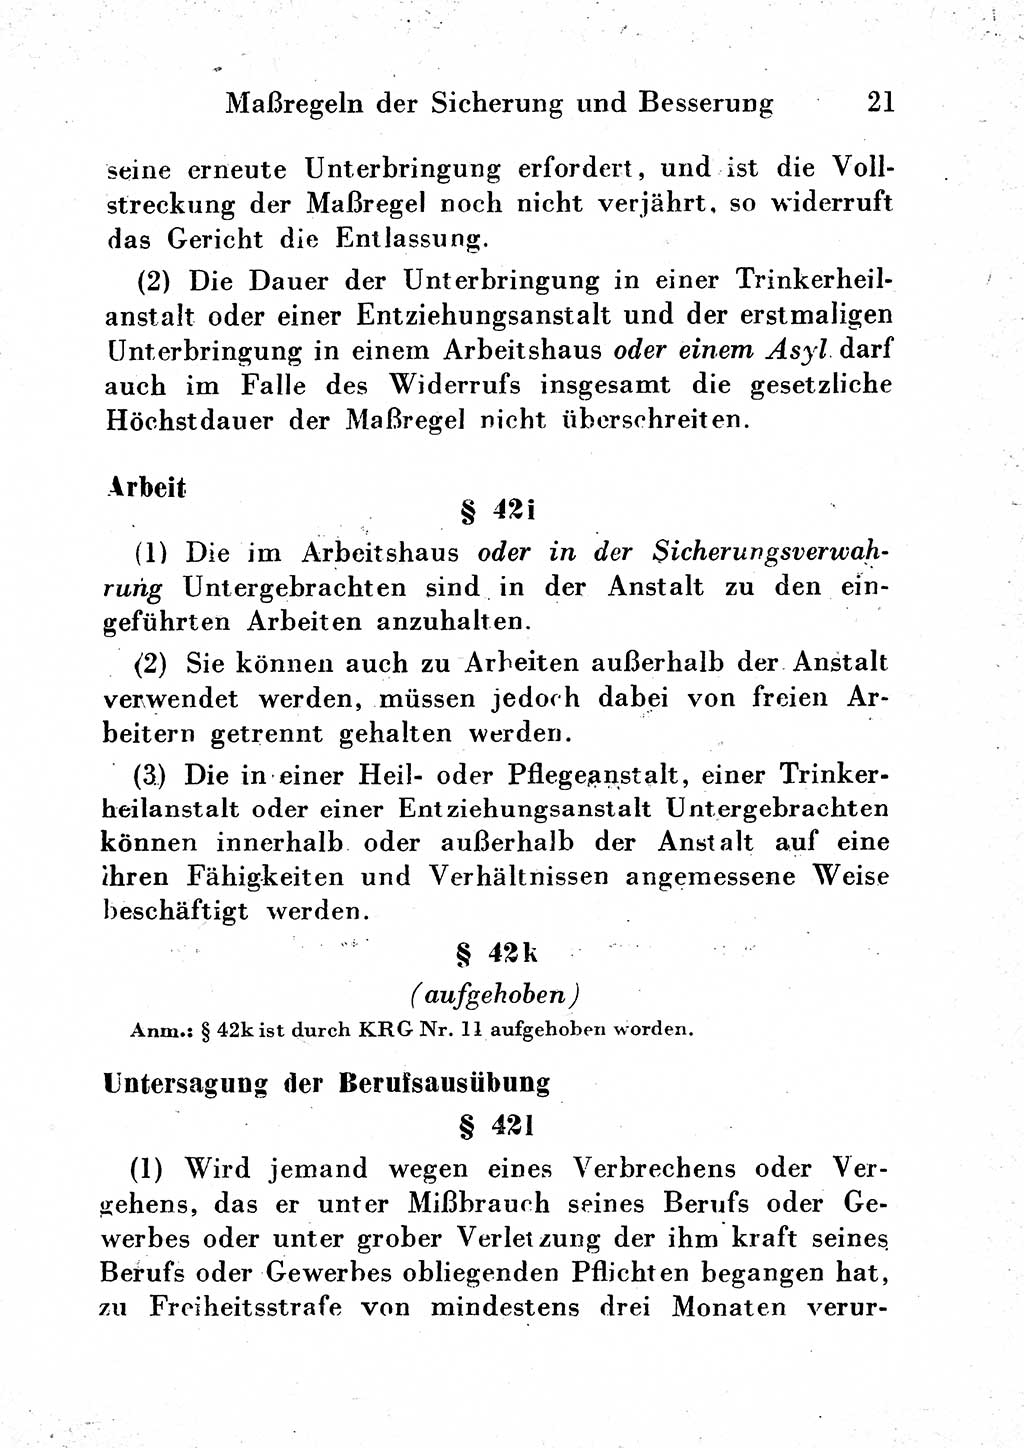 Strafgesetzbuch (StGB) und andere Strafgesetze [Deutsche Demokratische Republik (DDR)] 1954, Seite 21 (StGB Strafges. DDR 1954, S. 21)